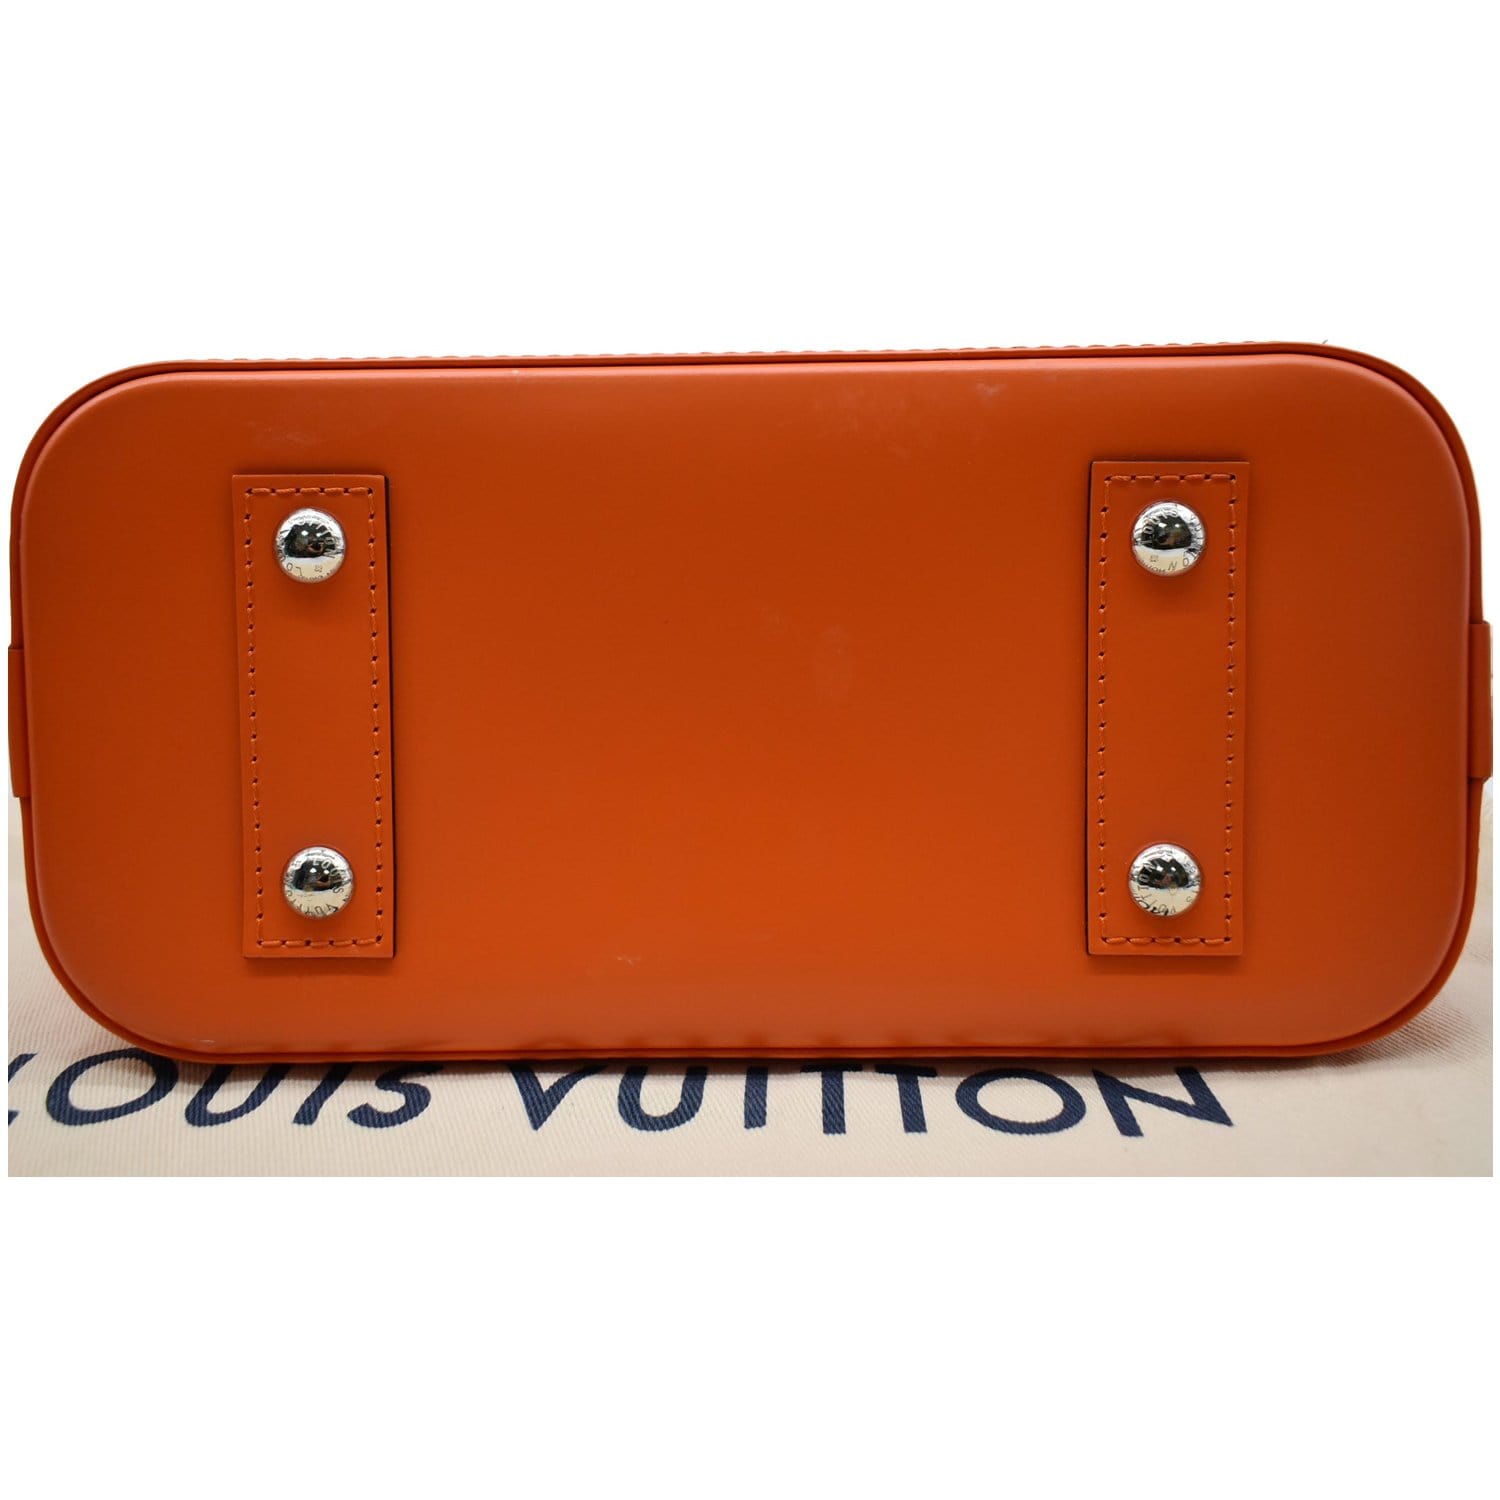 Louis Vuitton Alma BB Epi Orange RJL1654 – LuxuryPromise